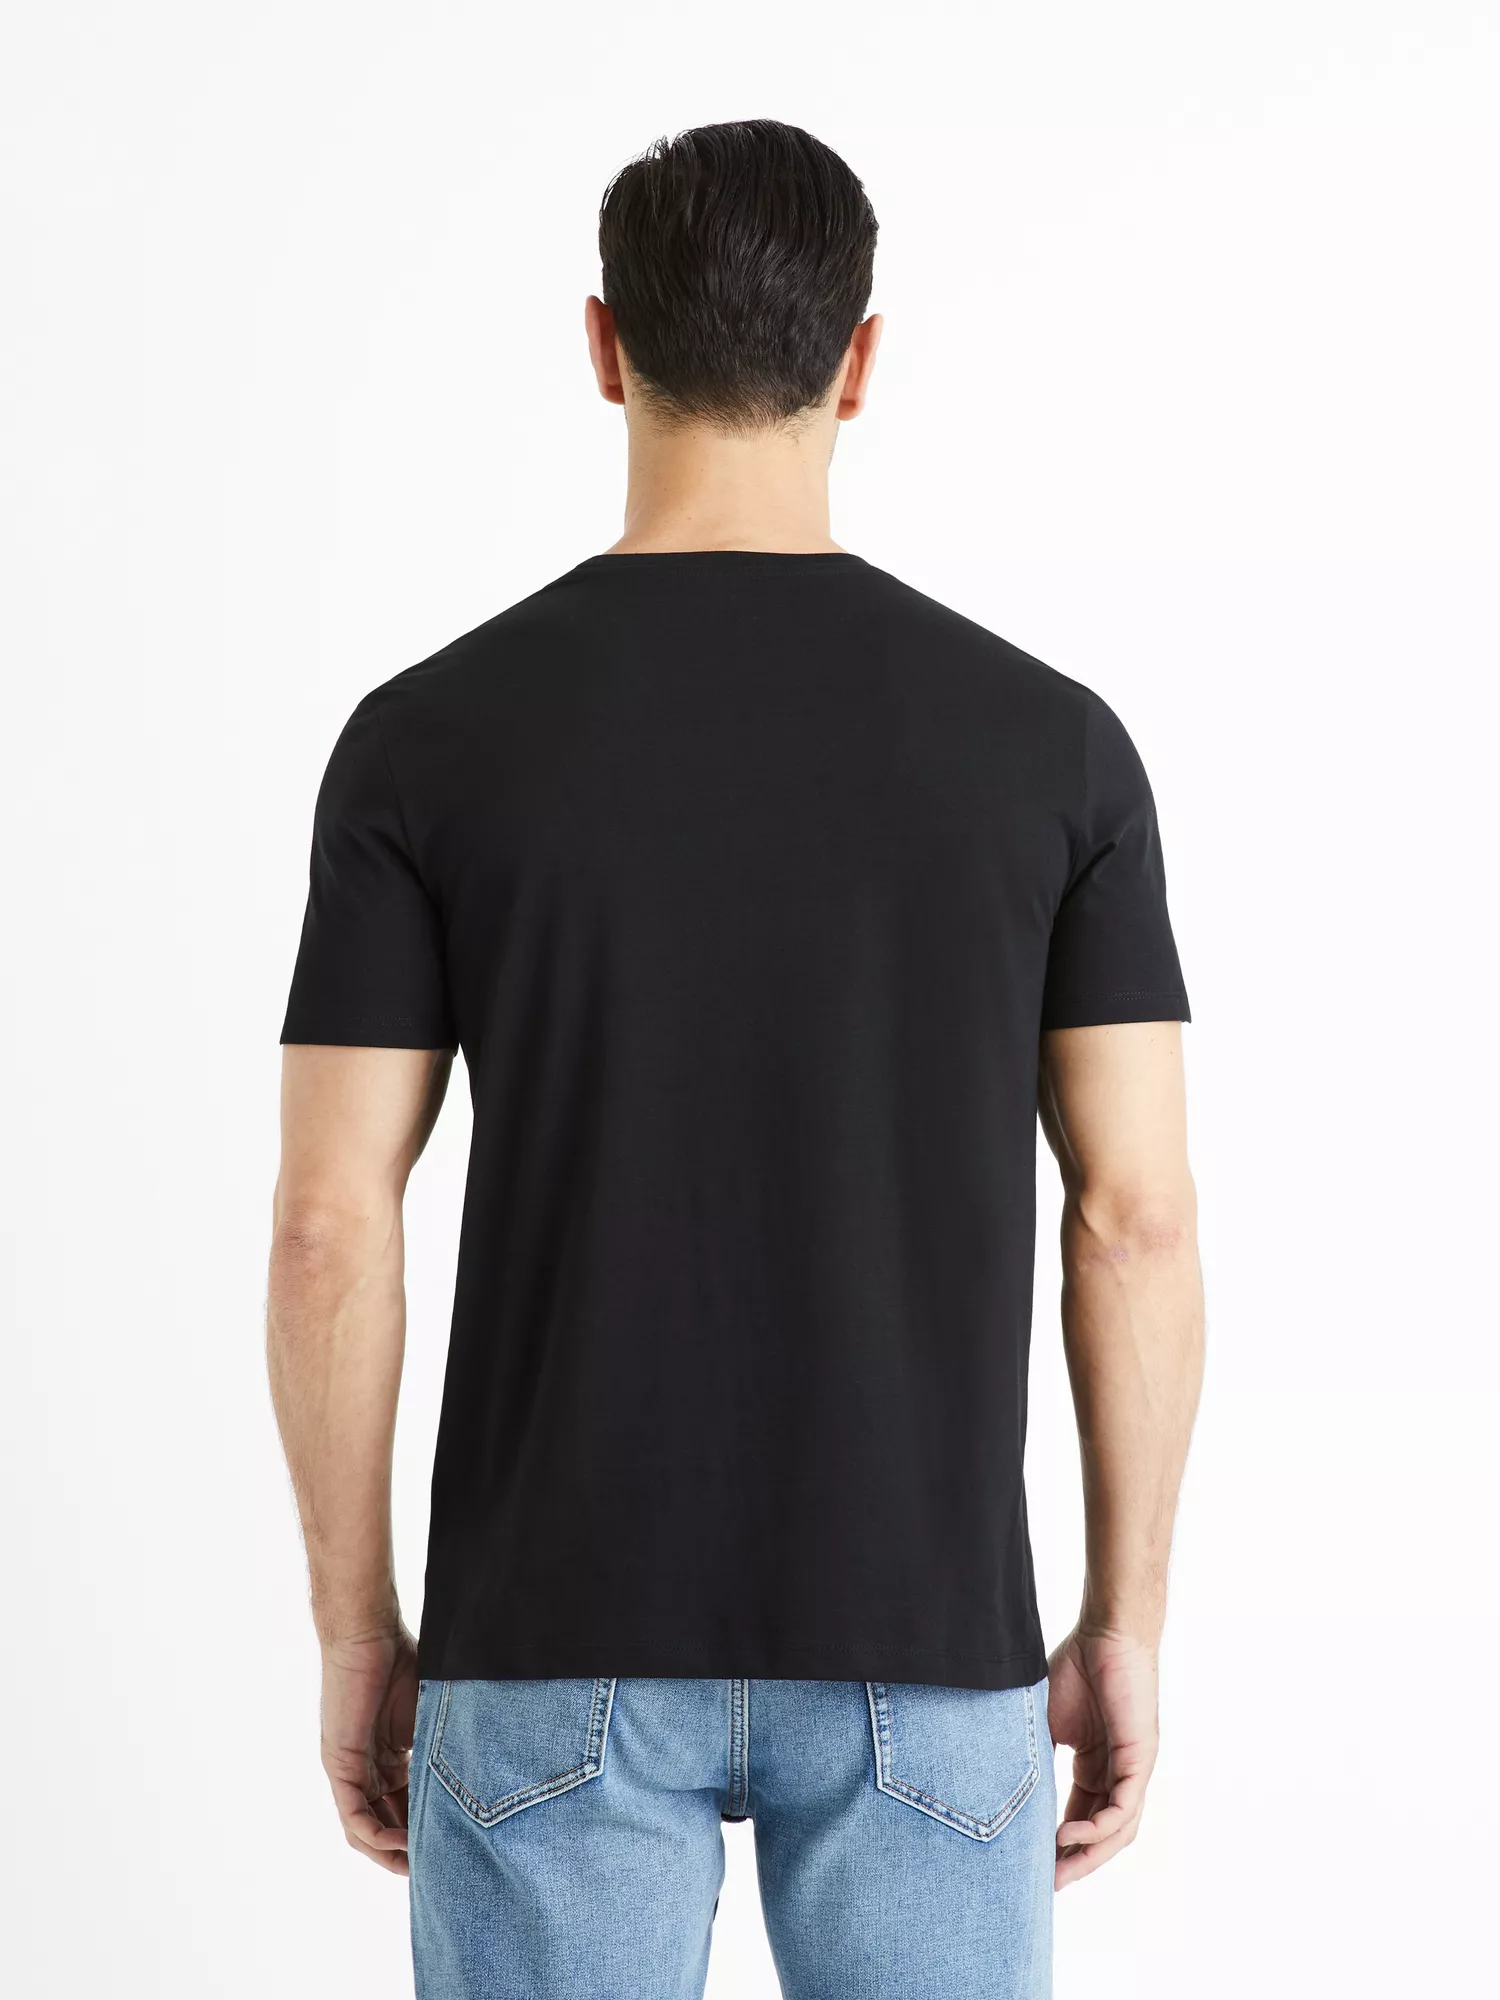 Basic tričko Tebase s krátkým rukávem (4)